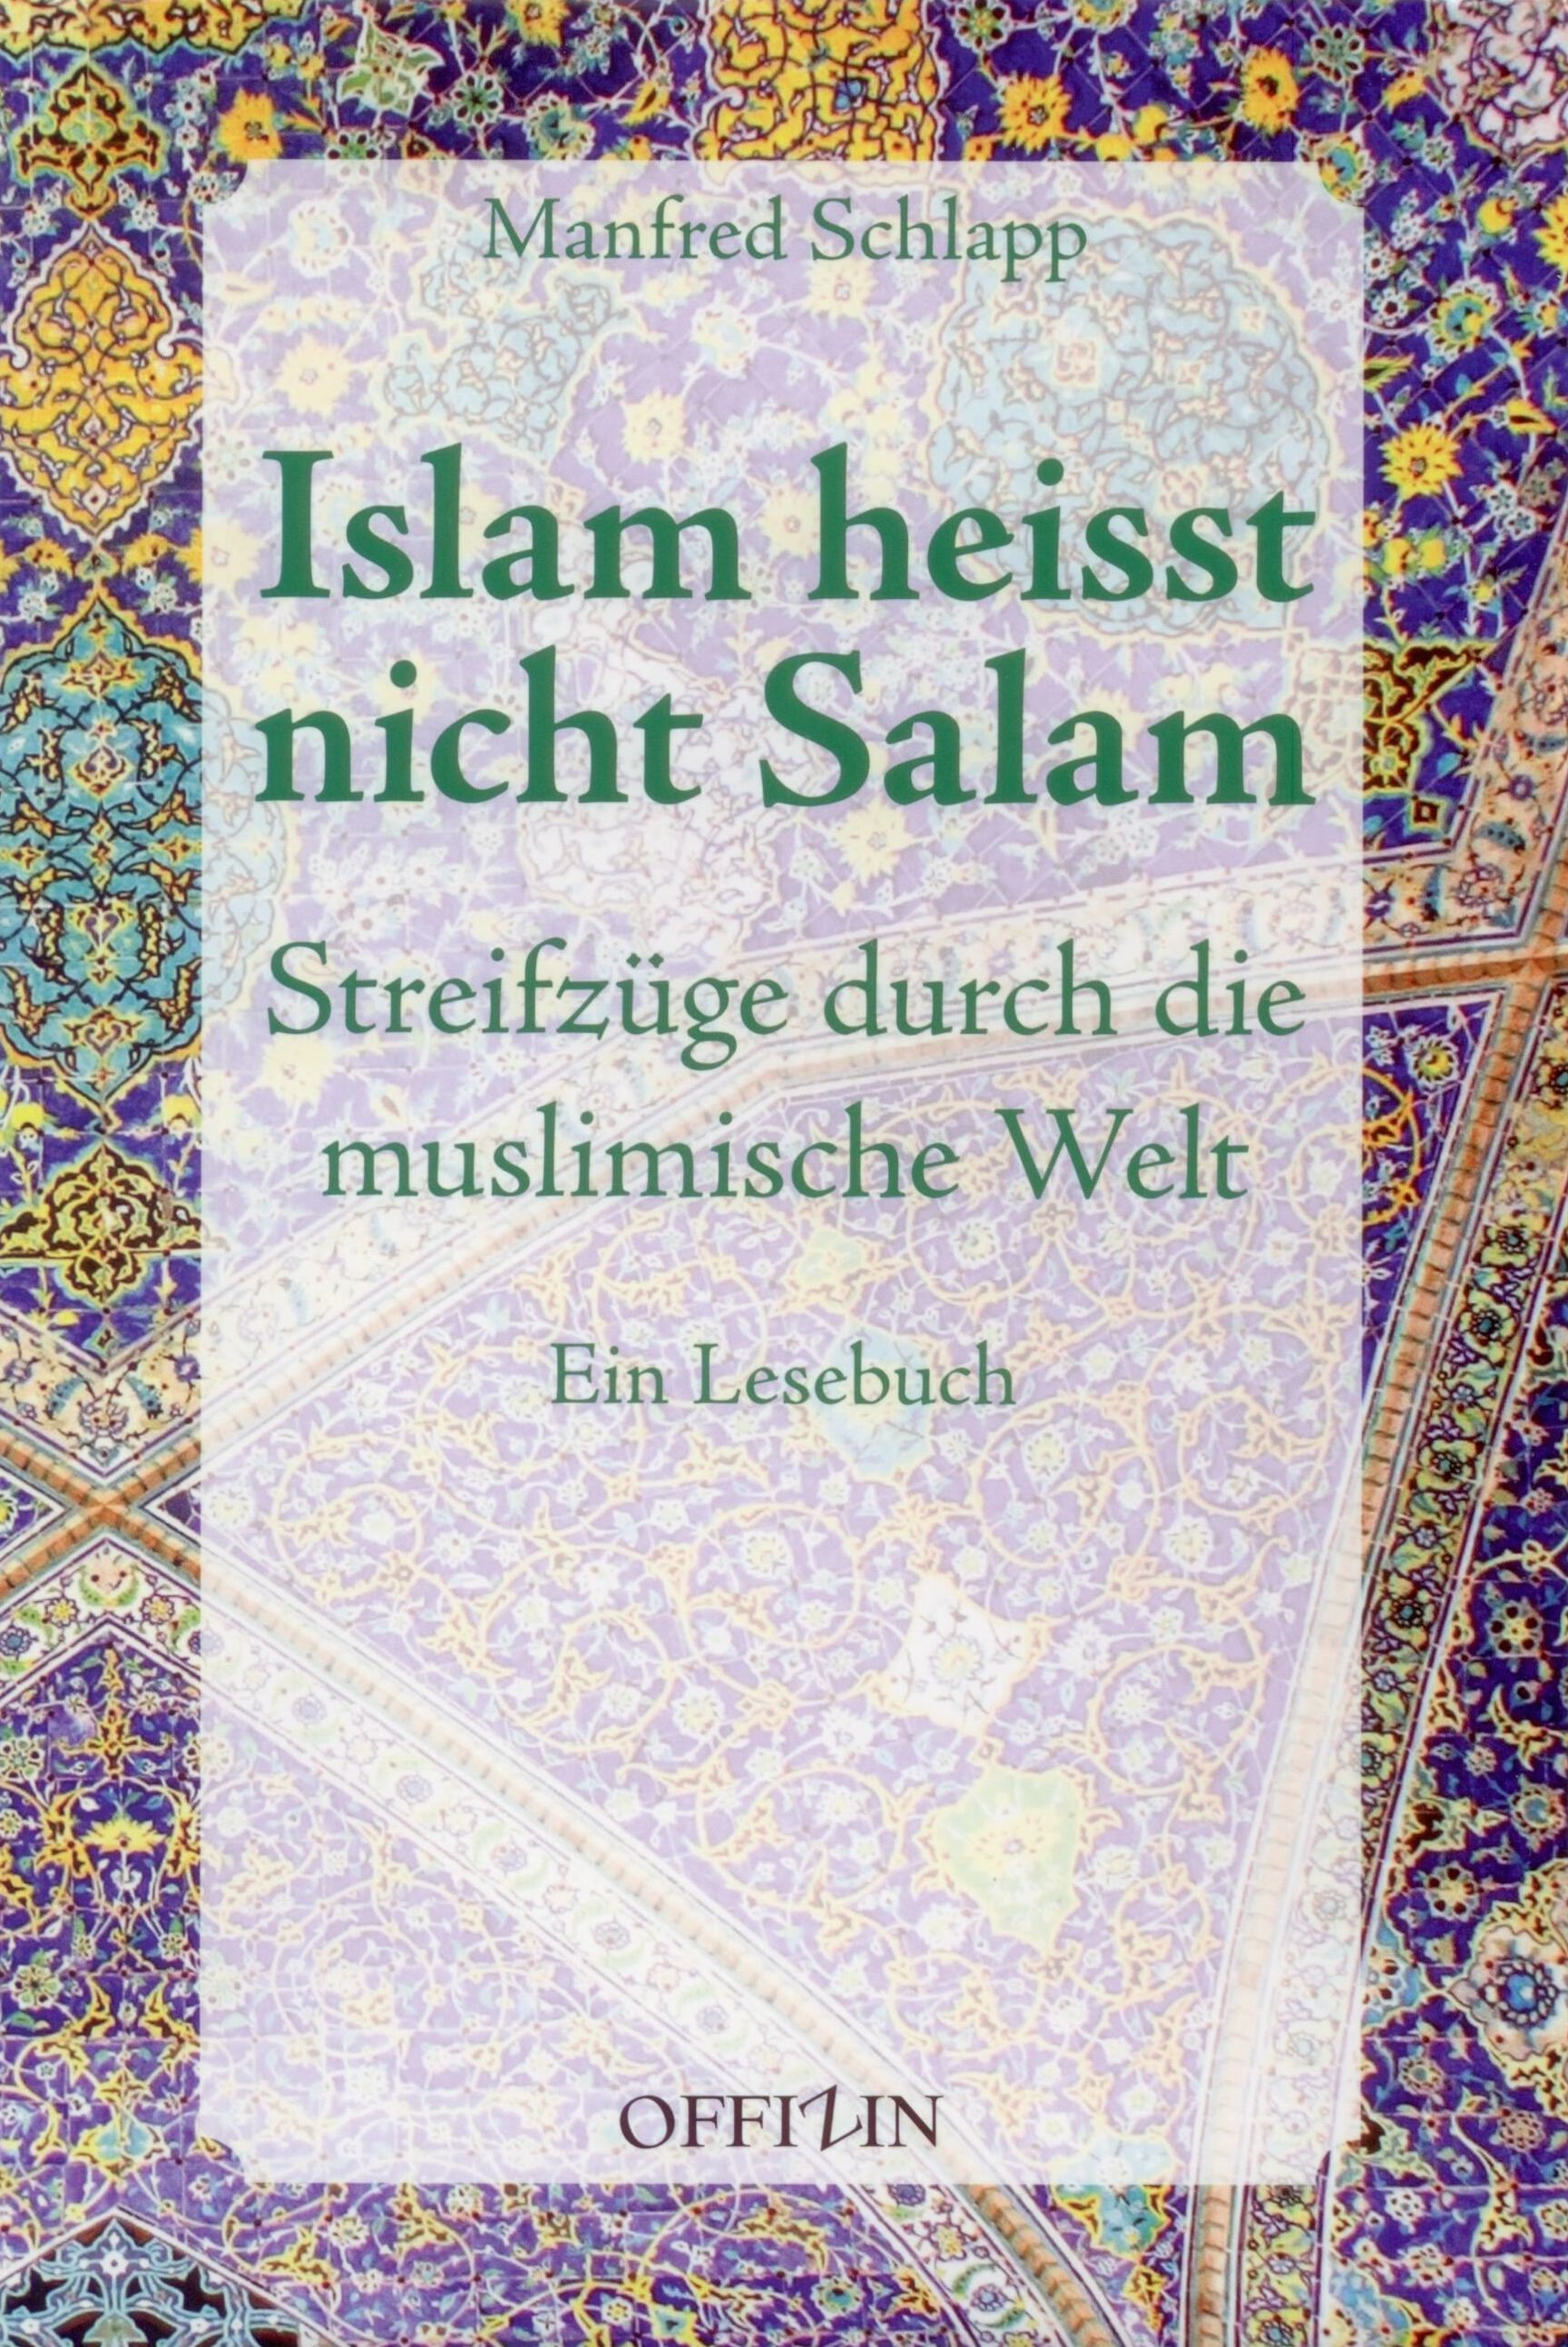 Manfred Schlapp: Islam heißt nicht Salam. Streifzüge durch die muslimische Welt. Ein Lesebuch, Bild: Zürich: Offizin, 2014..